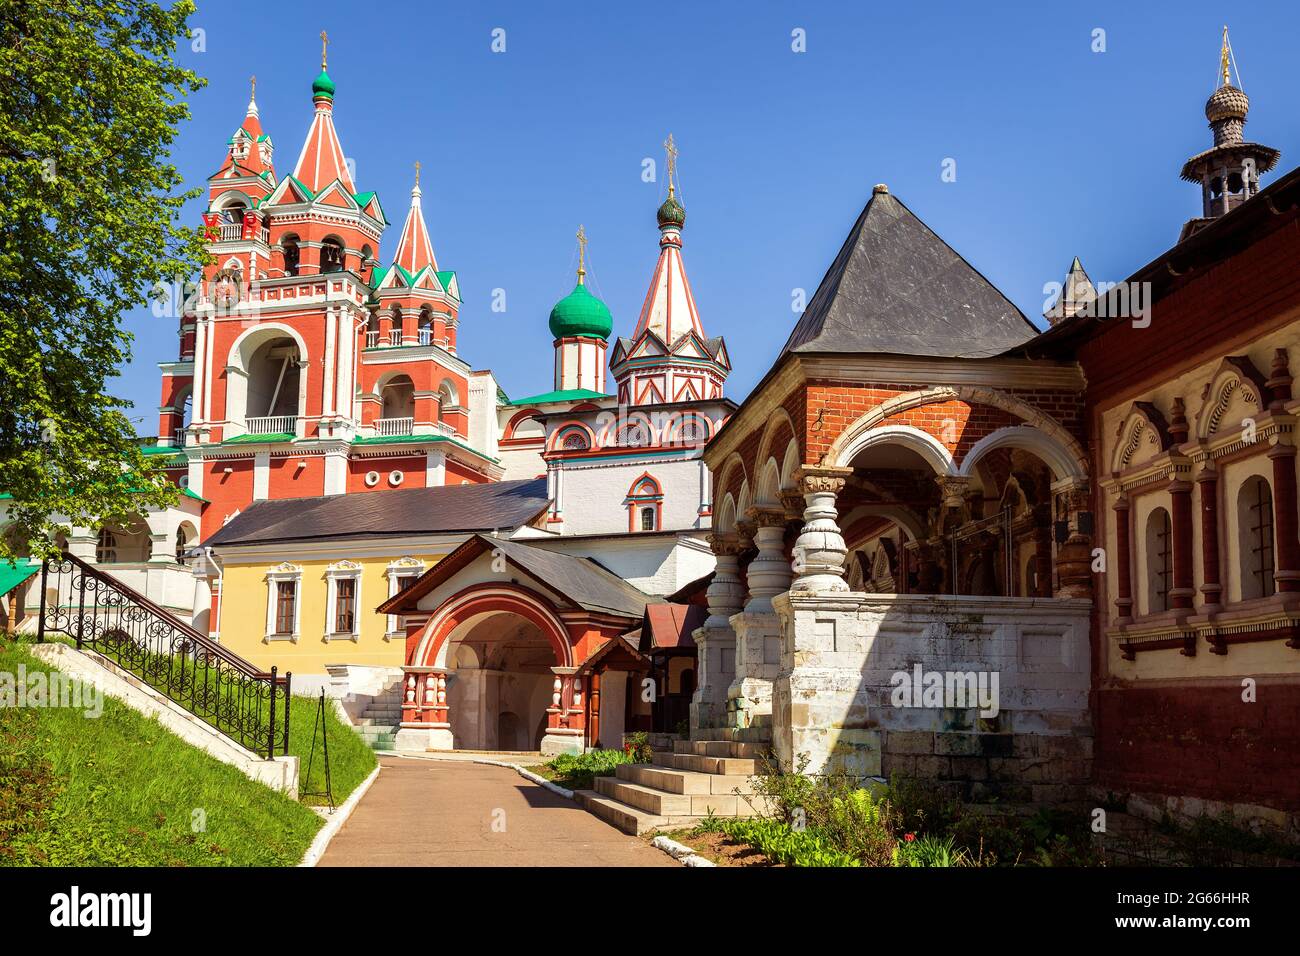 Ancien monastère Savvino-Storozhevsky à Zvenigorod, région de Moscou, Russie Banque D'Images